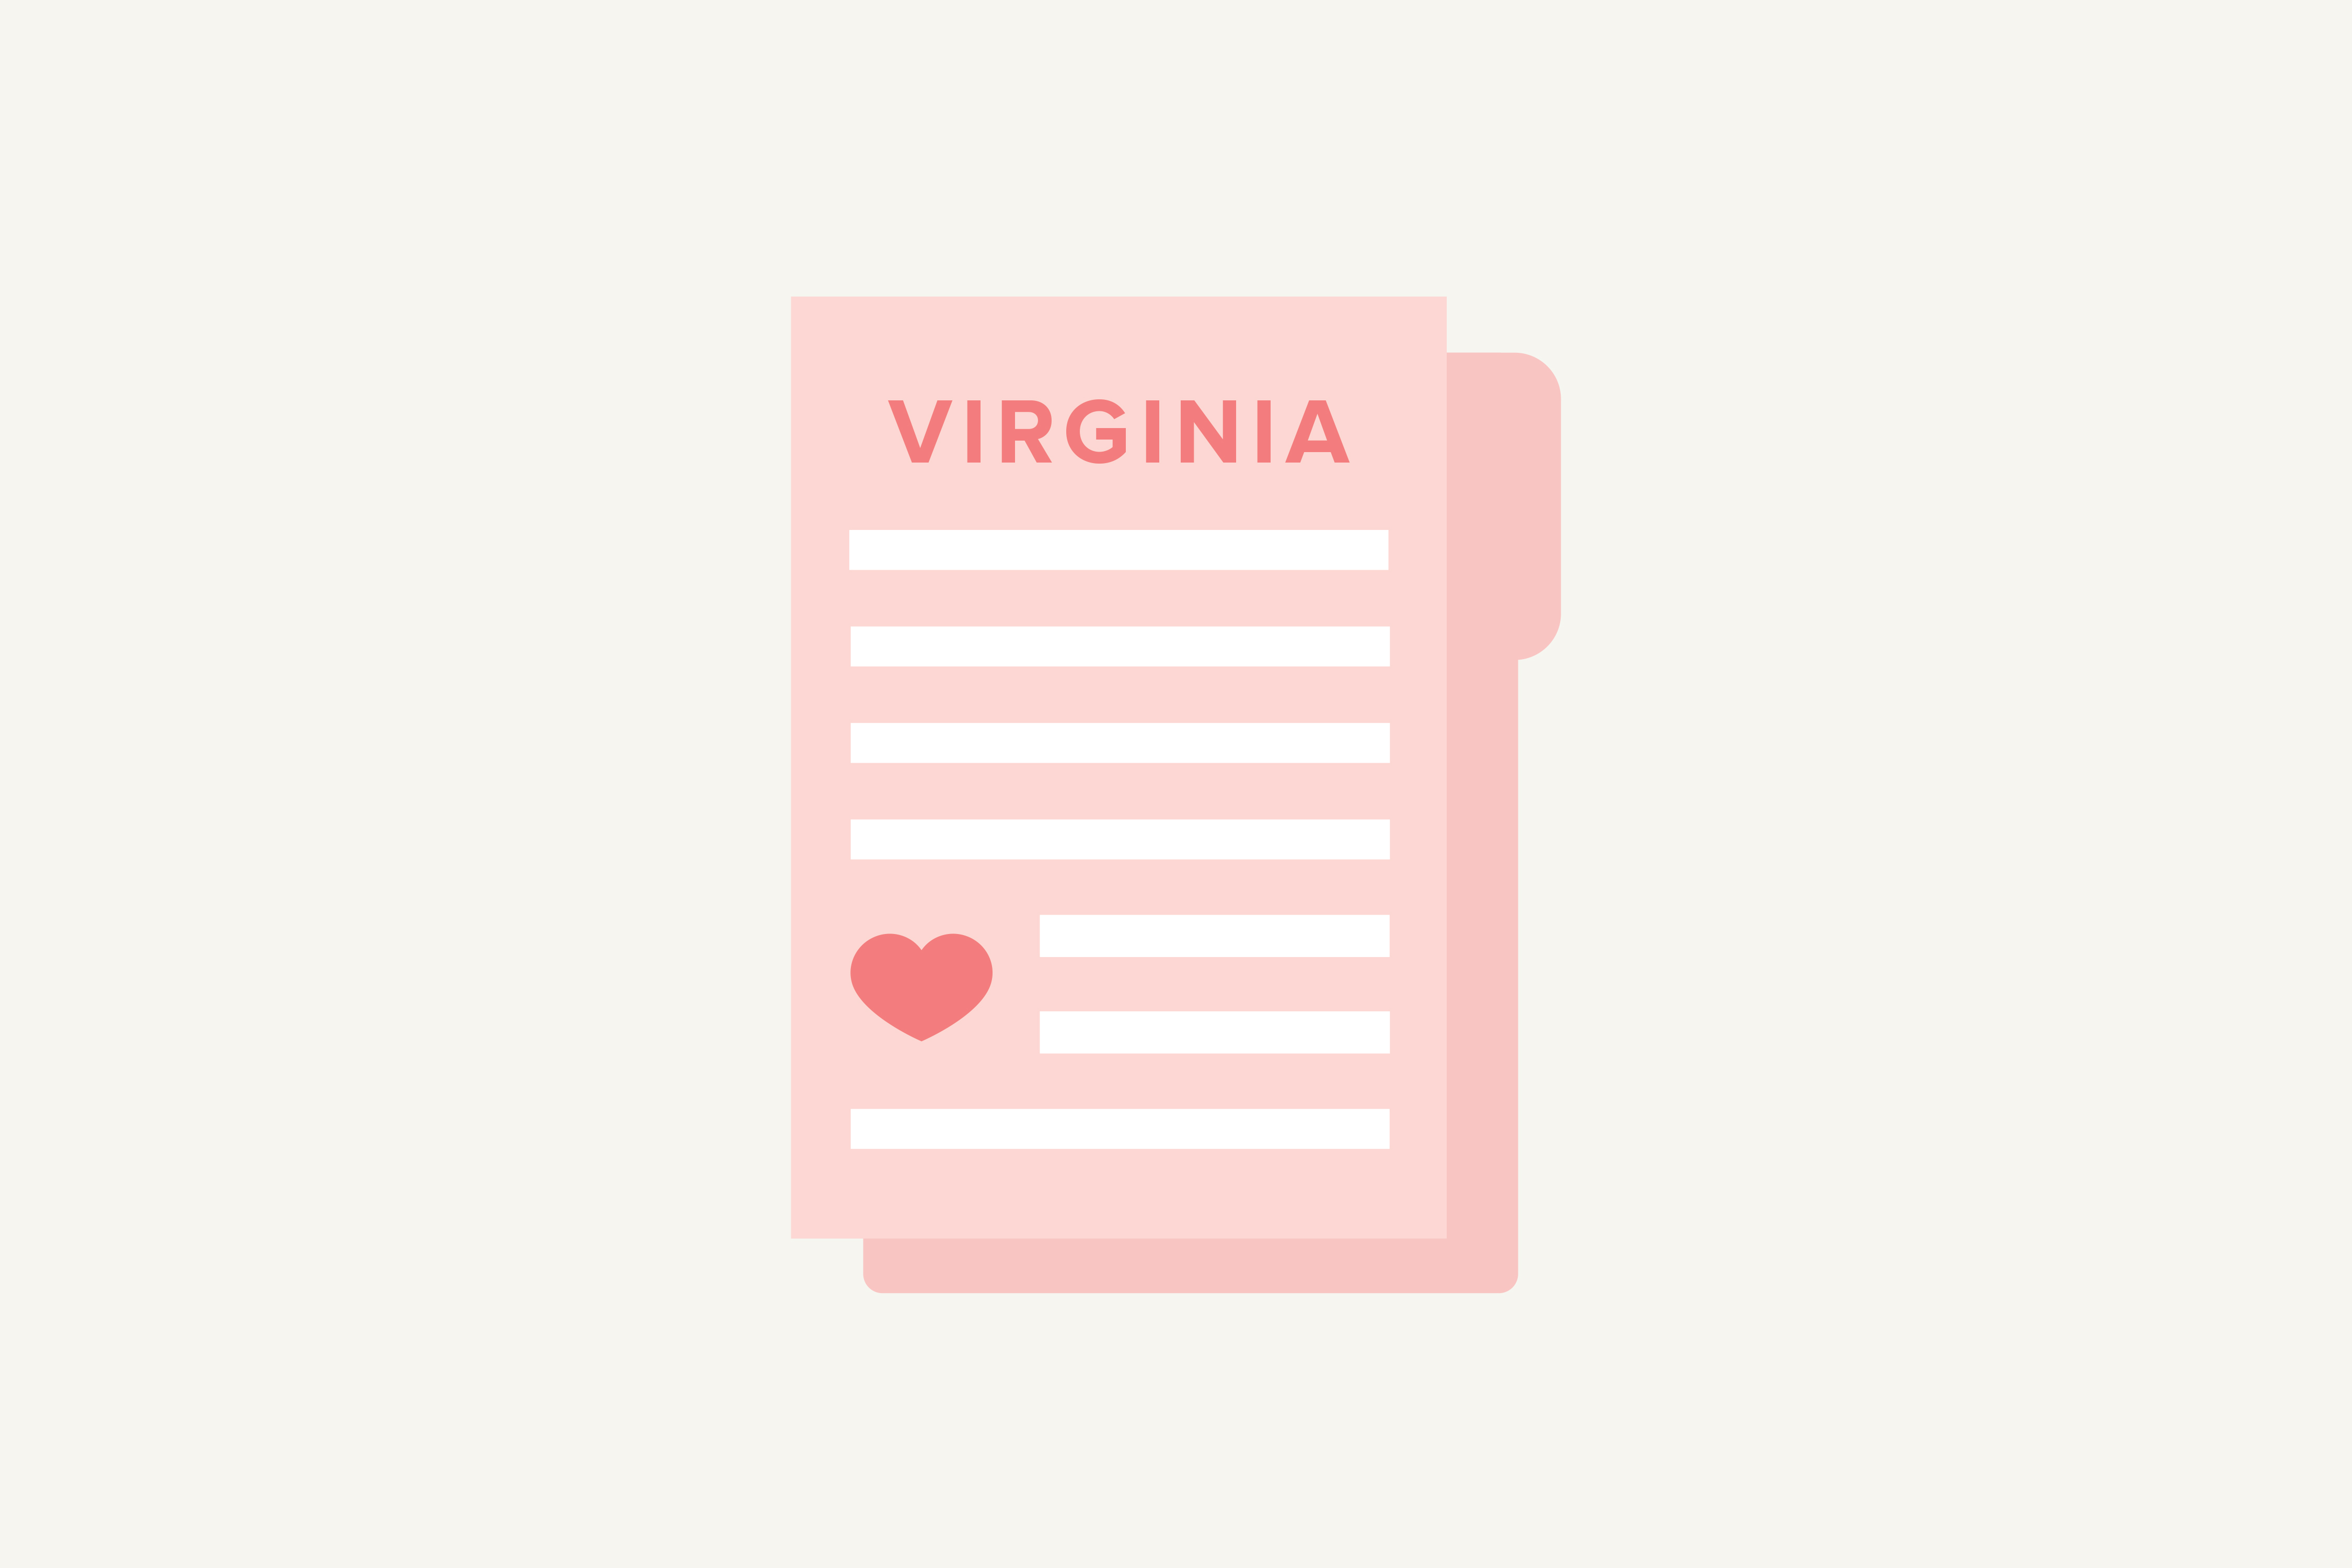 Virginia Marriage Laws